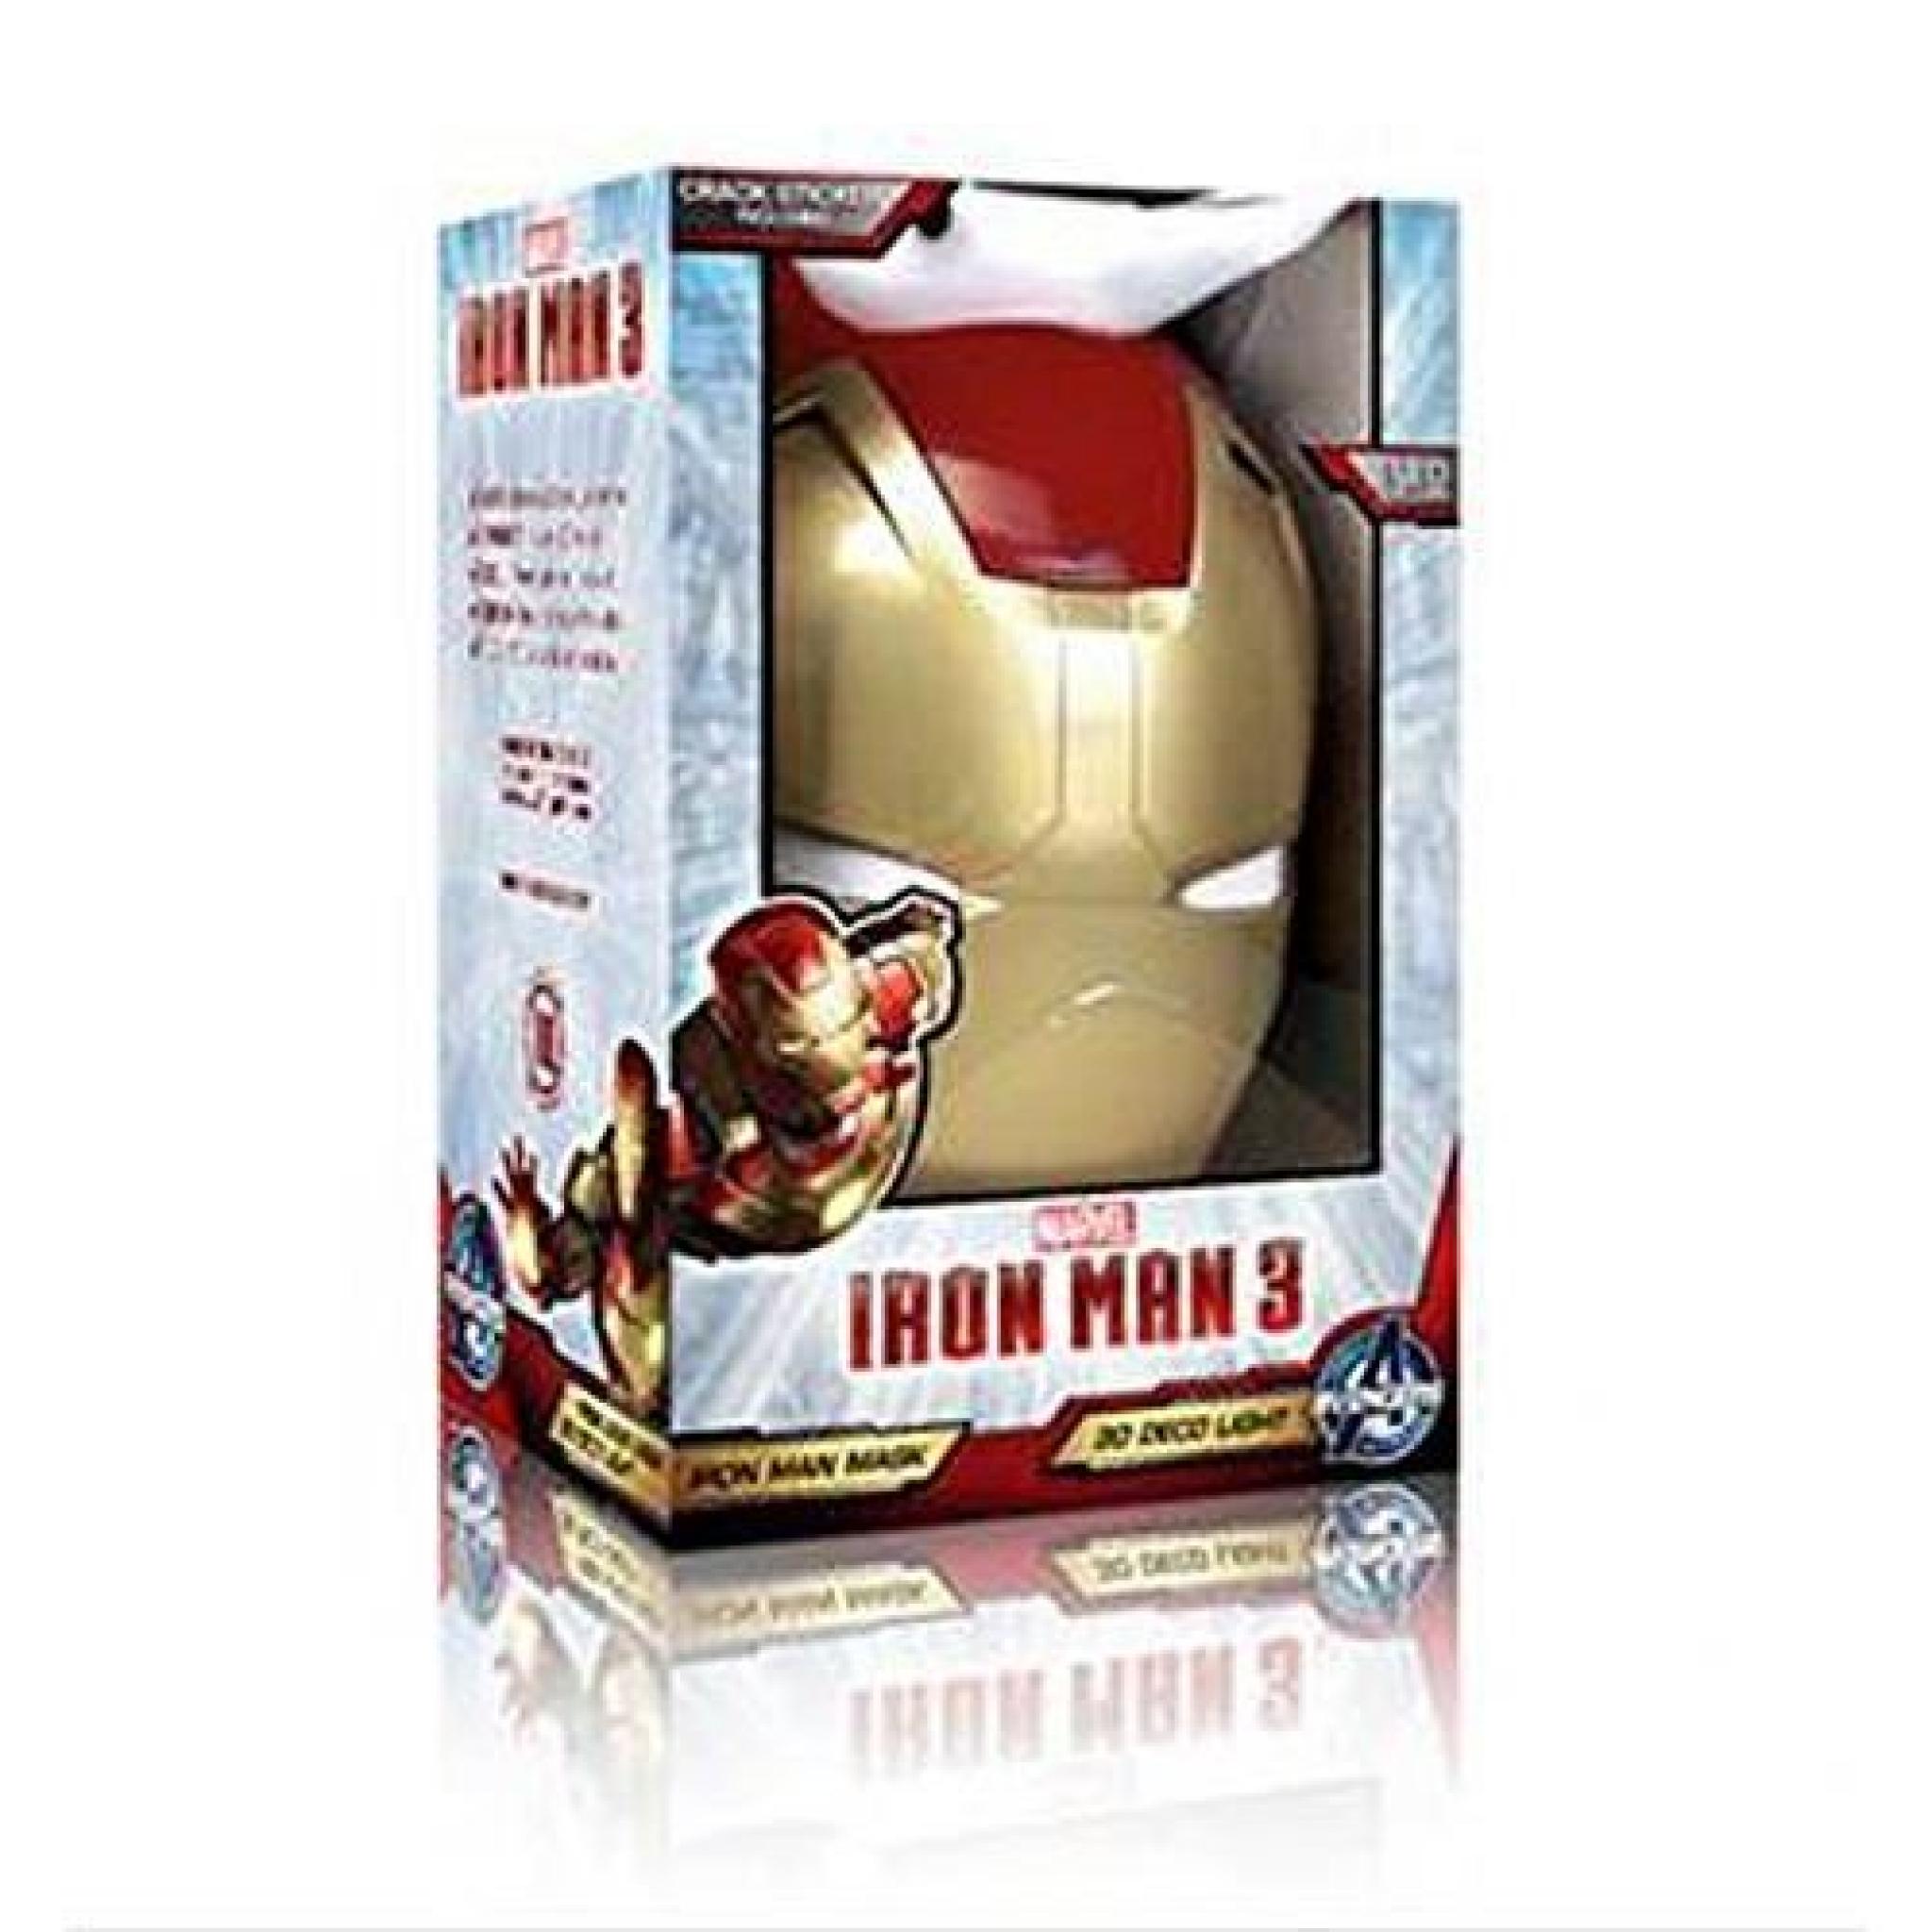  Lampe Applique Murale en forme de Masque Iron Man 3D pas cher